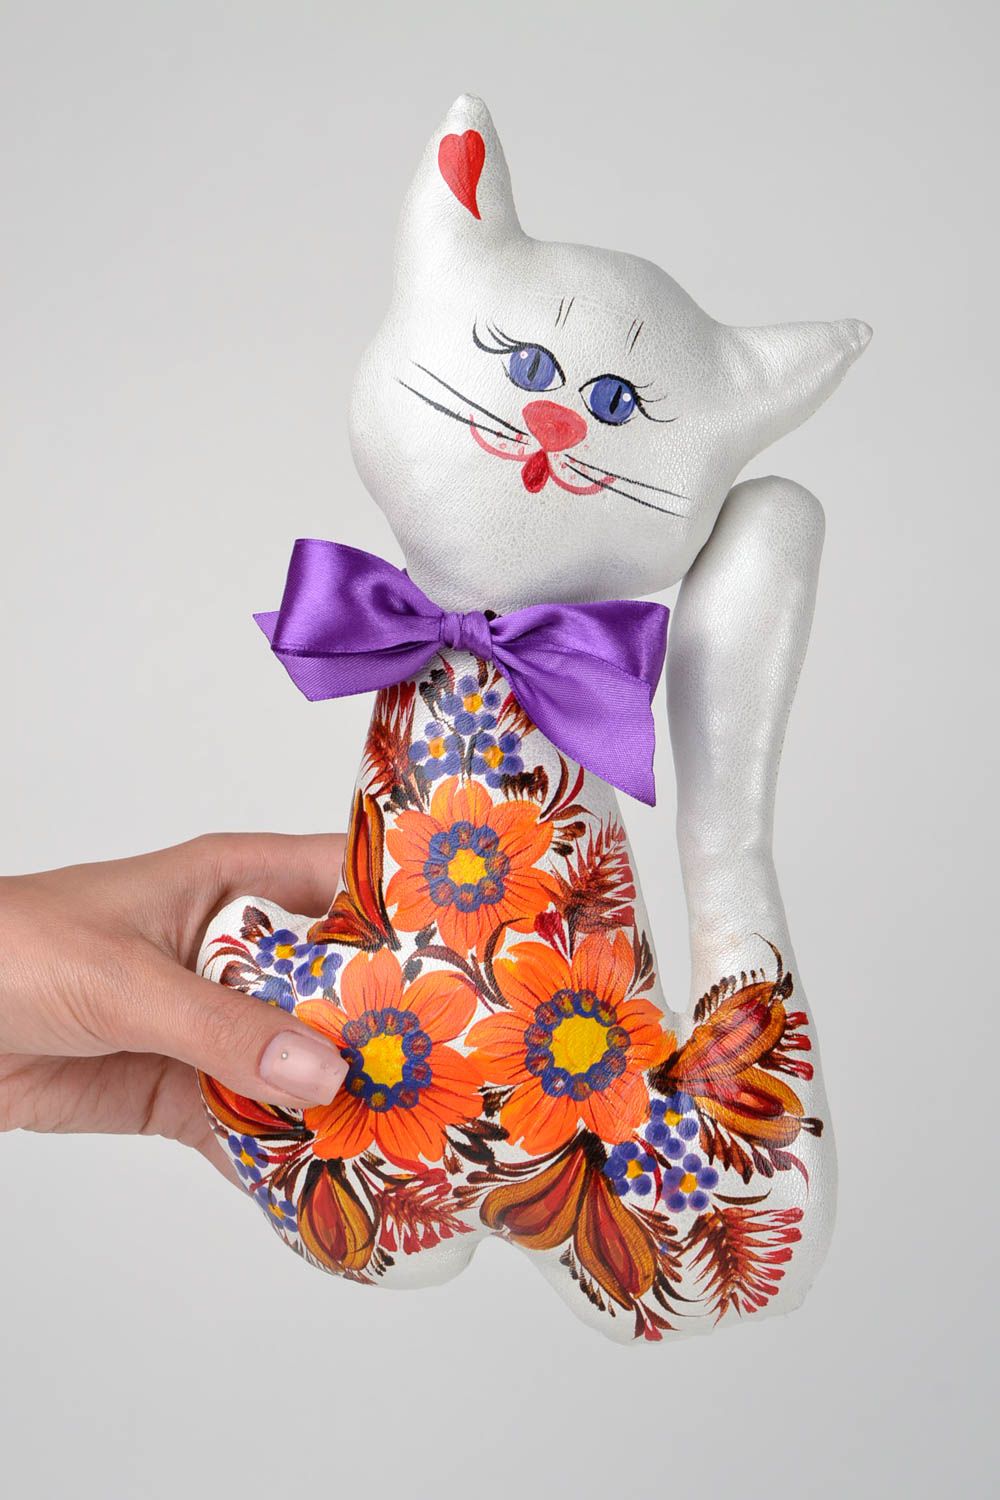 Kleinkinder Spielzeug Geschenk für Kinder Haus Deko weiche Kuscheltiere handmade foto 2